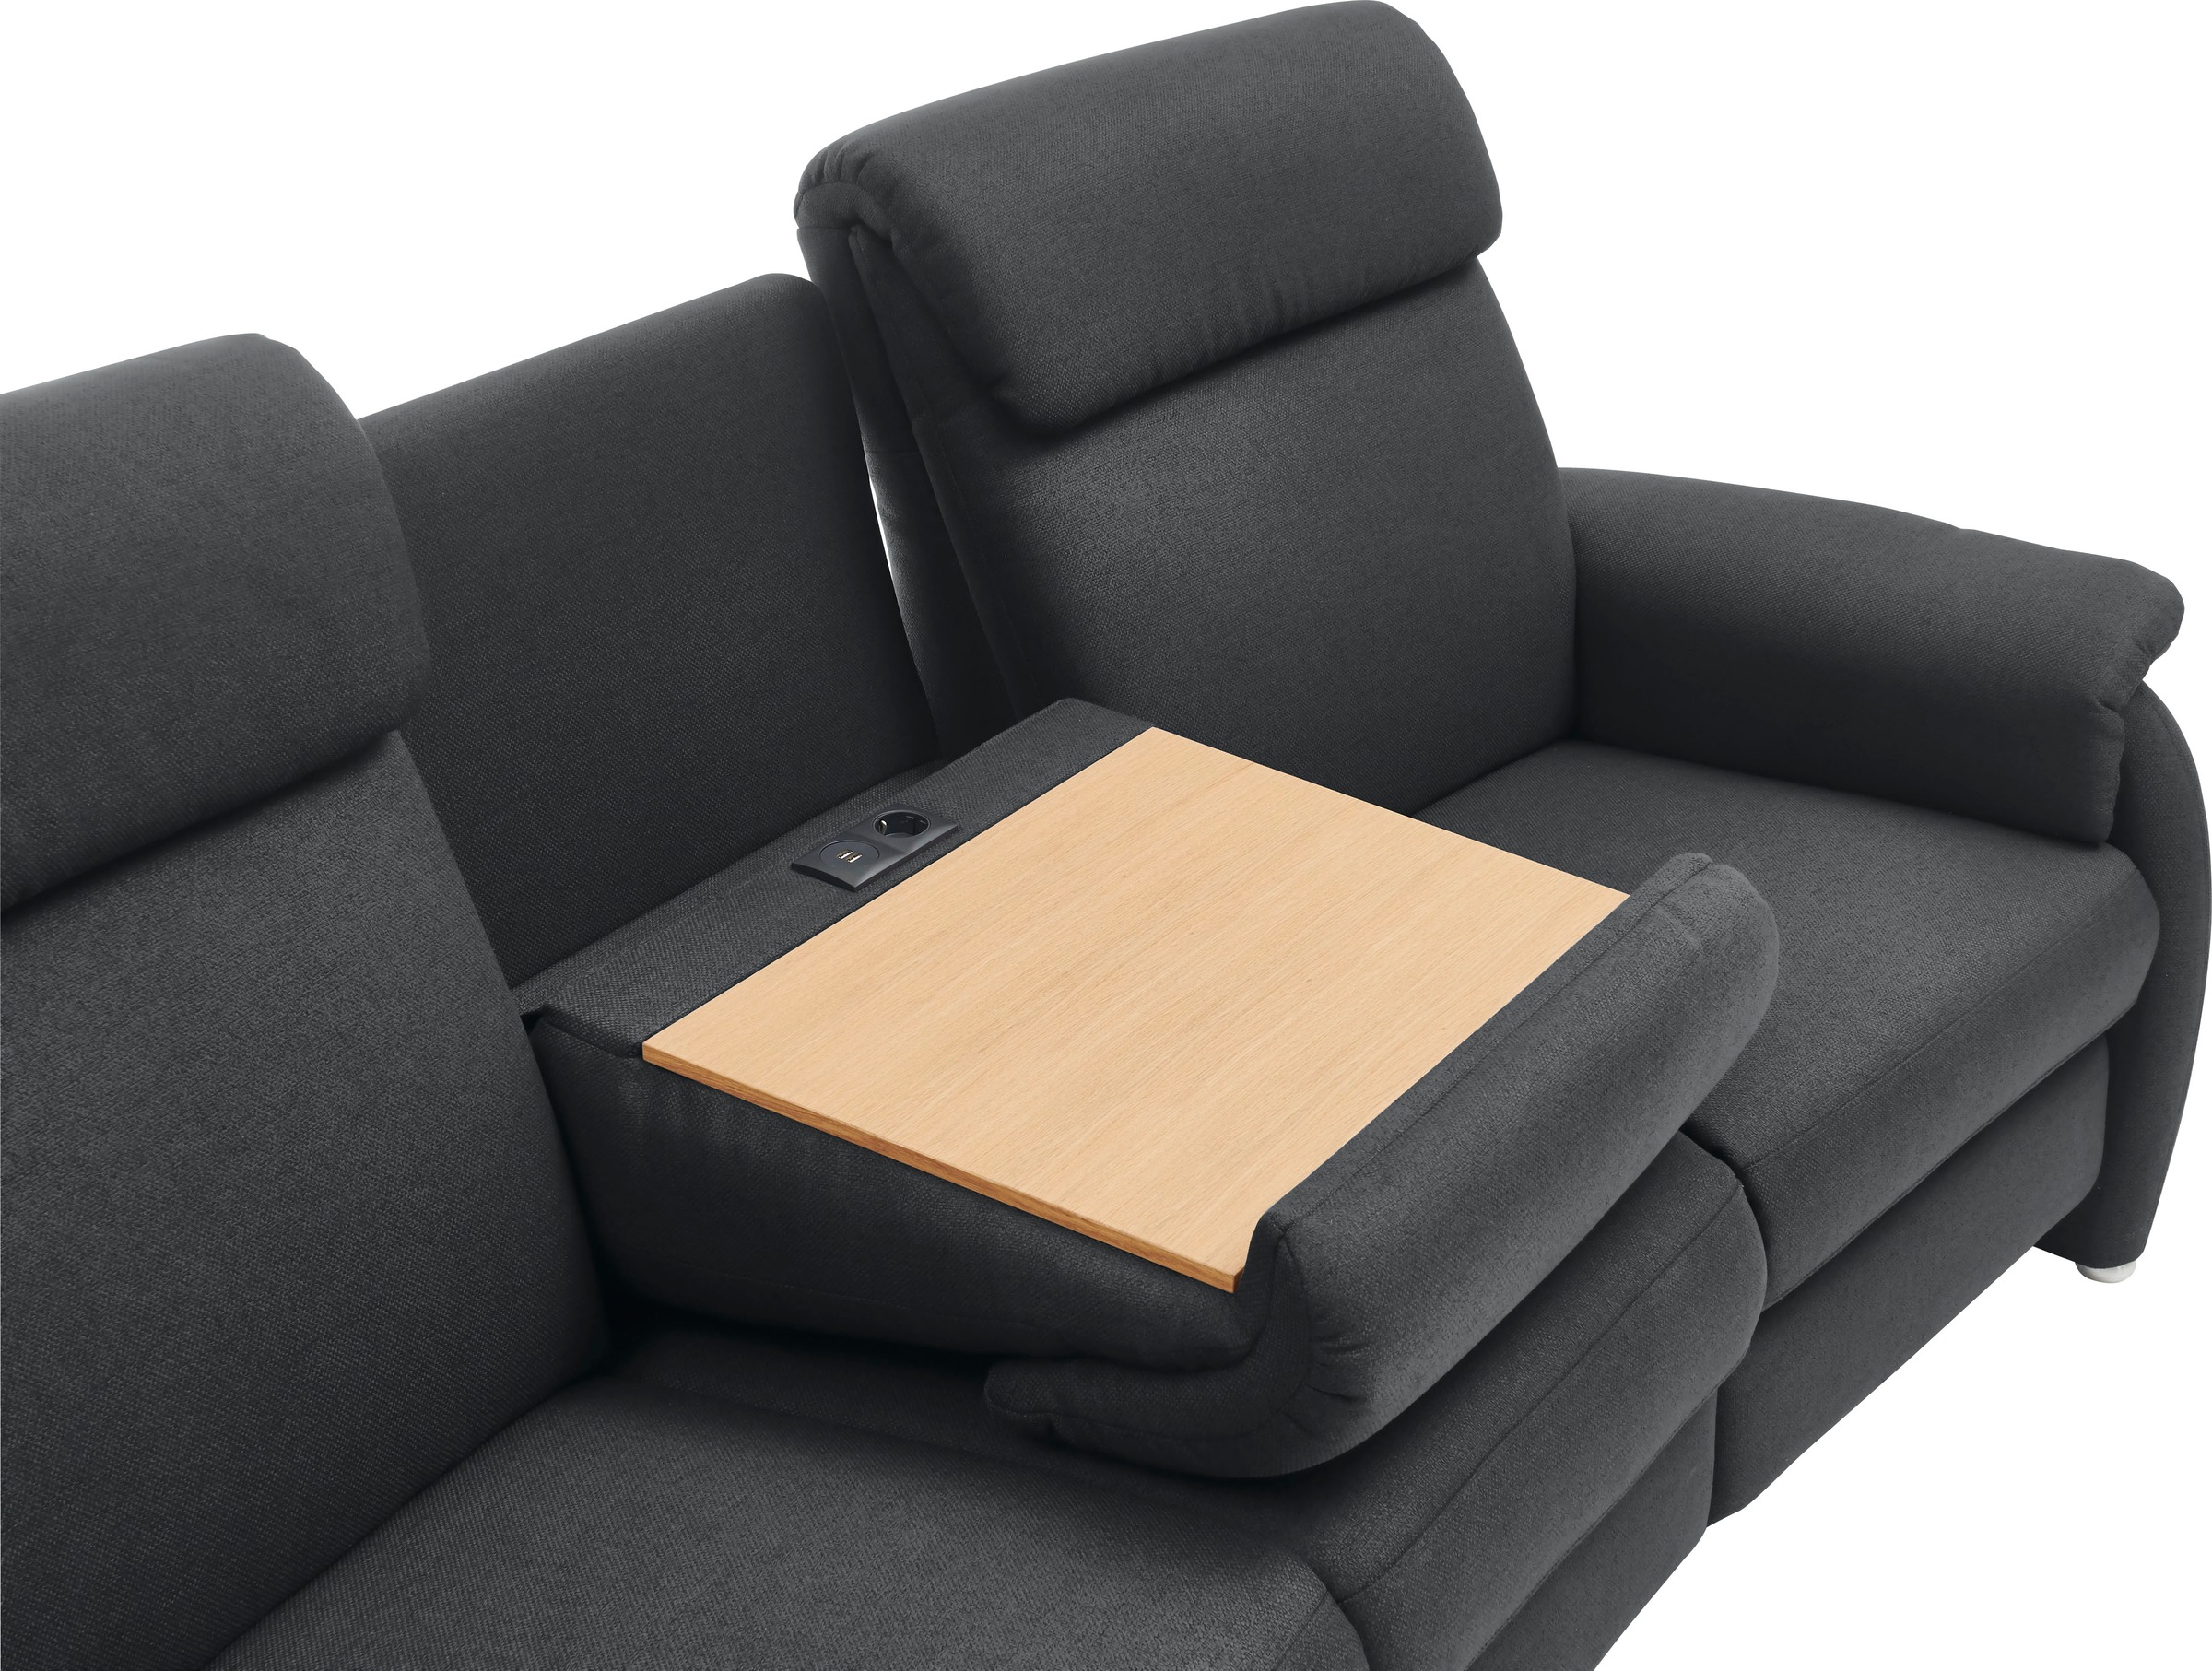 Home affaire 3-Sitzer »Turin mit Steckdose und USB-Port auch in Easy care-Bezug«, 2 x vollmotorische Relaxfunktion, herunterklappbarer Tisch